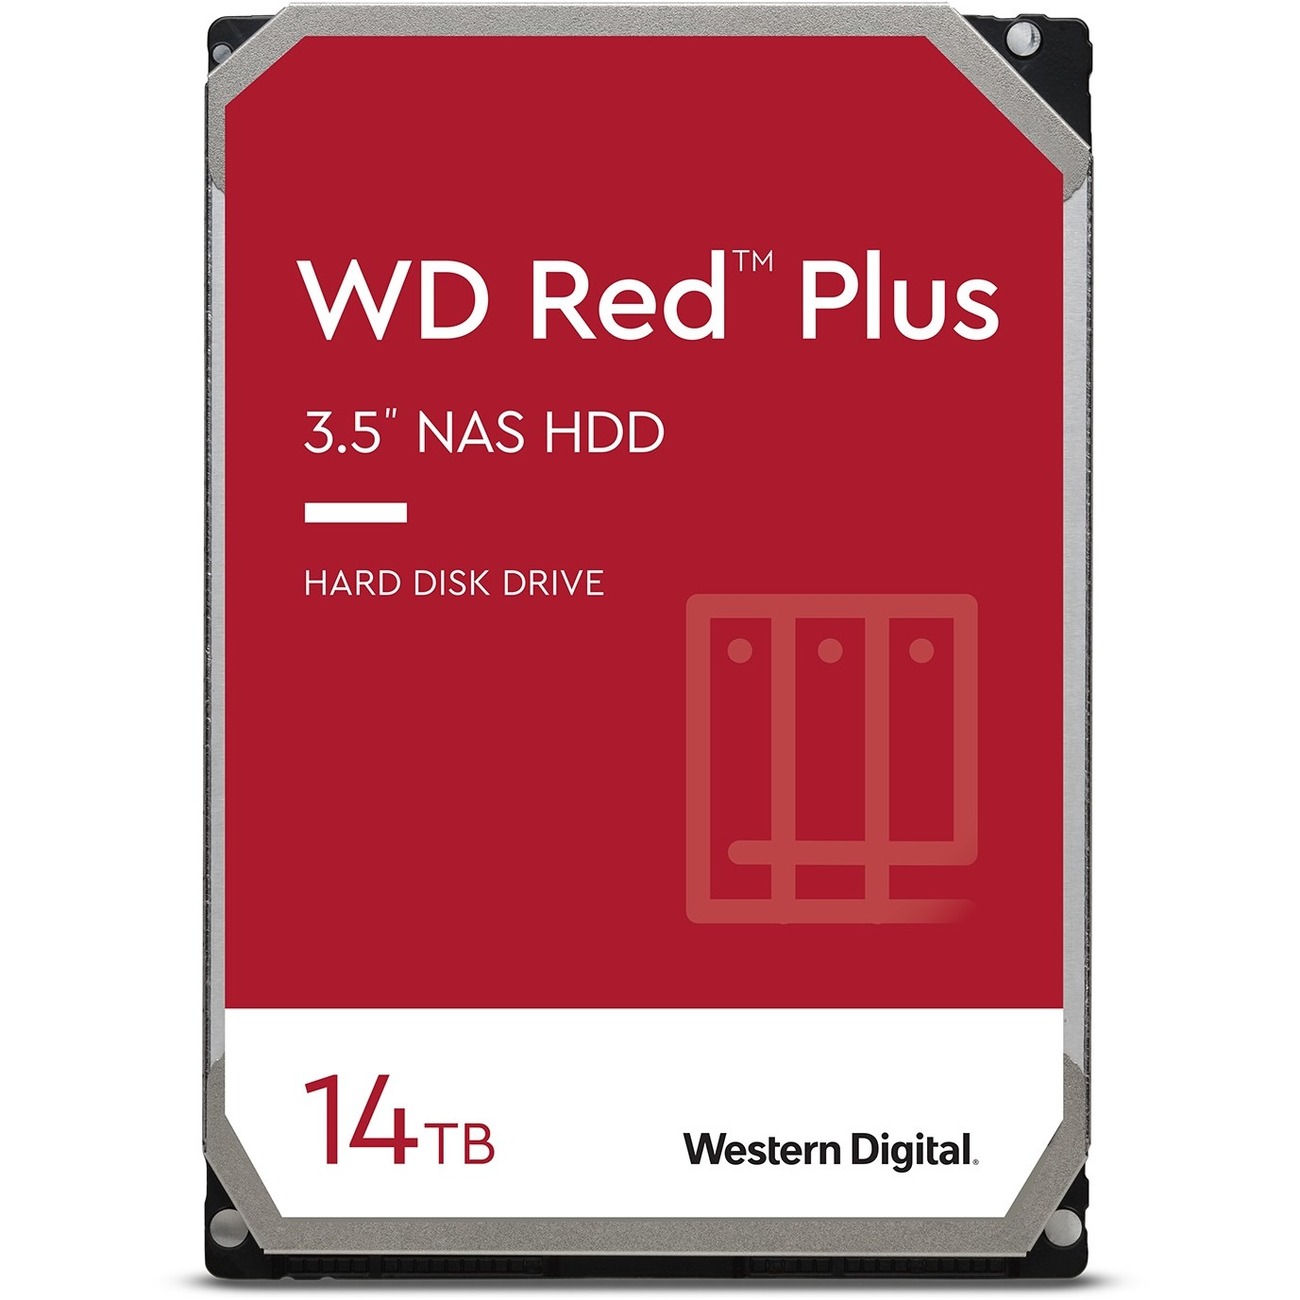 2x Western digital red plus 14tb hard drive $360